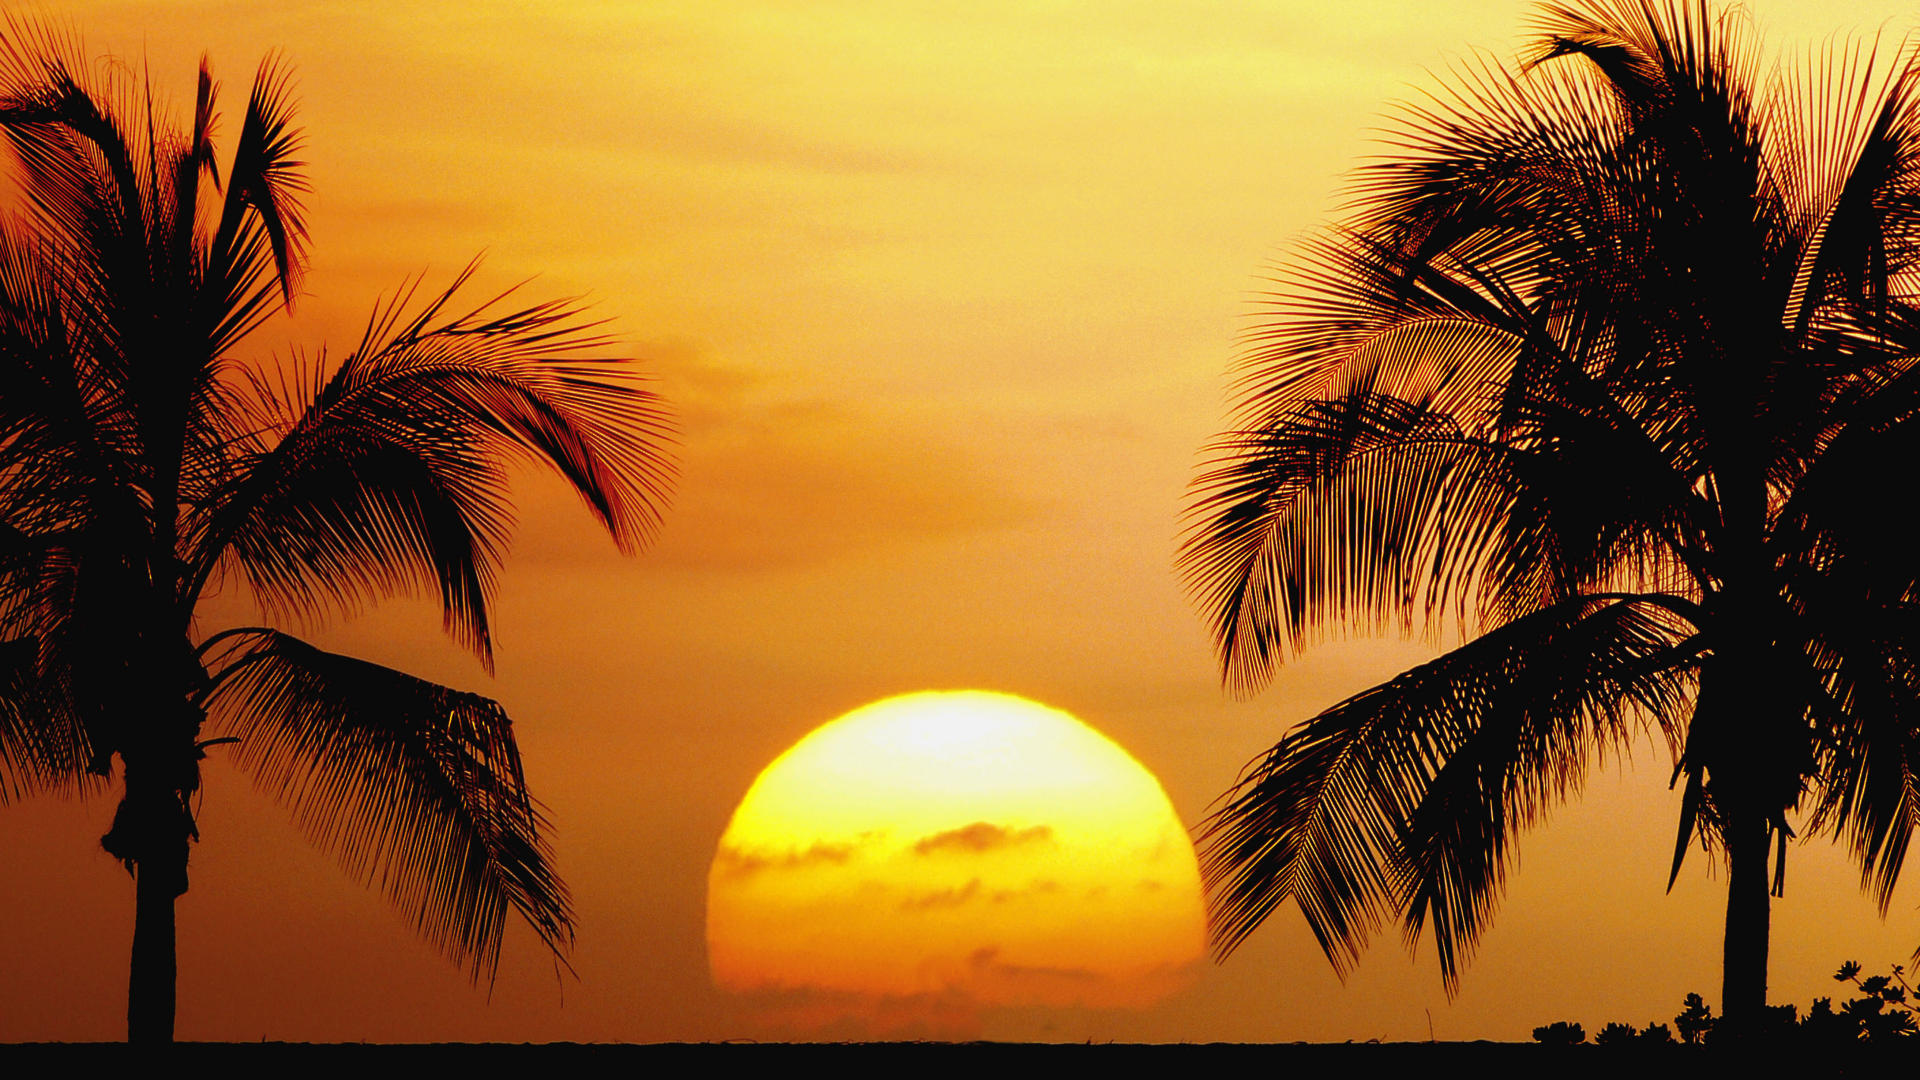 Скачать обои бесплатно Солнце, Пальмы, Силуэт, Гавайи, Земля/природа, Закат Солнца картинка на рабочий стол ПК